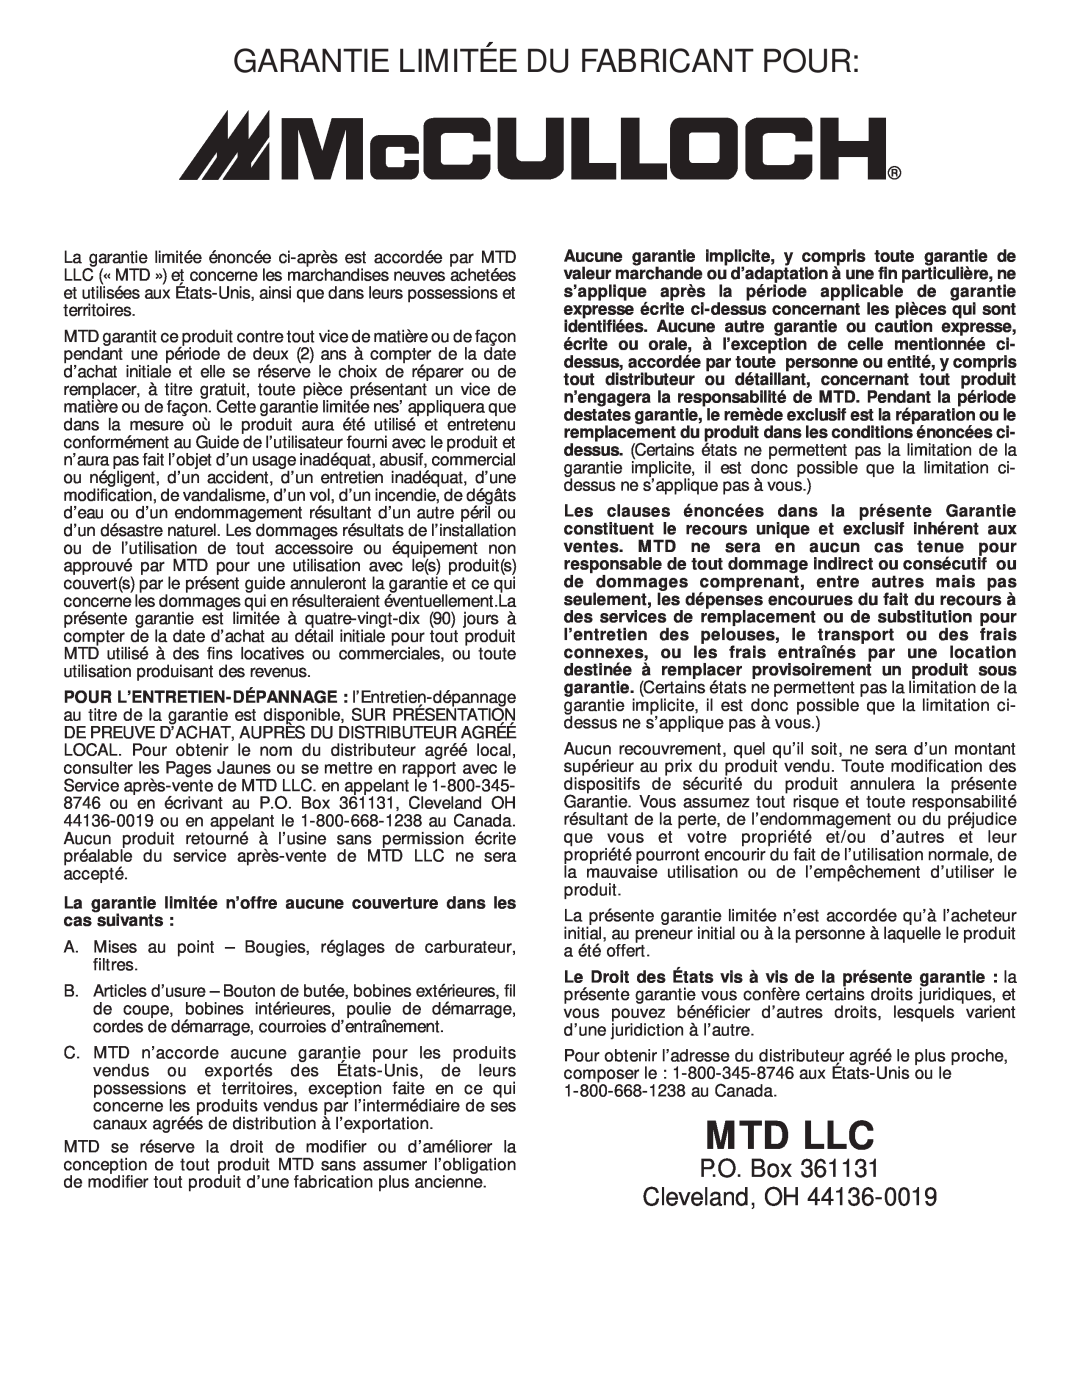 MTD MT700 Garantie Limitée Du Fabricant Pour, La garantie limitée n’offre aucune couverture dans les cas suivants, Mtd Llc 